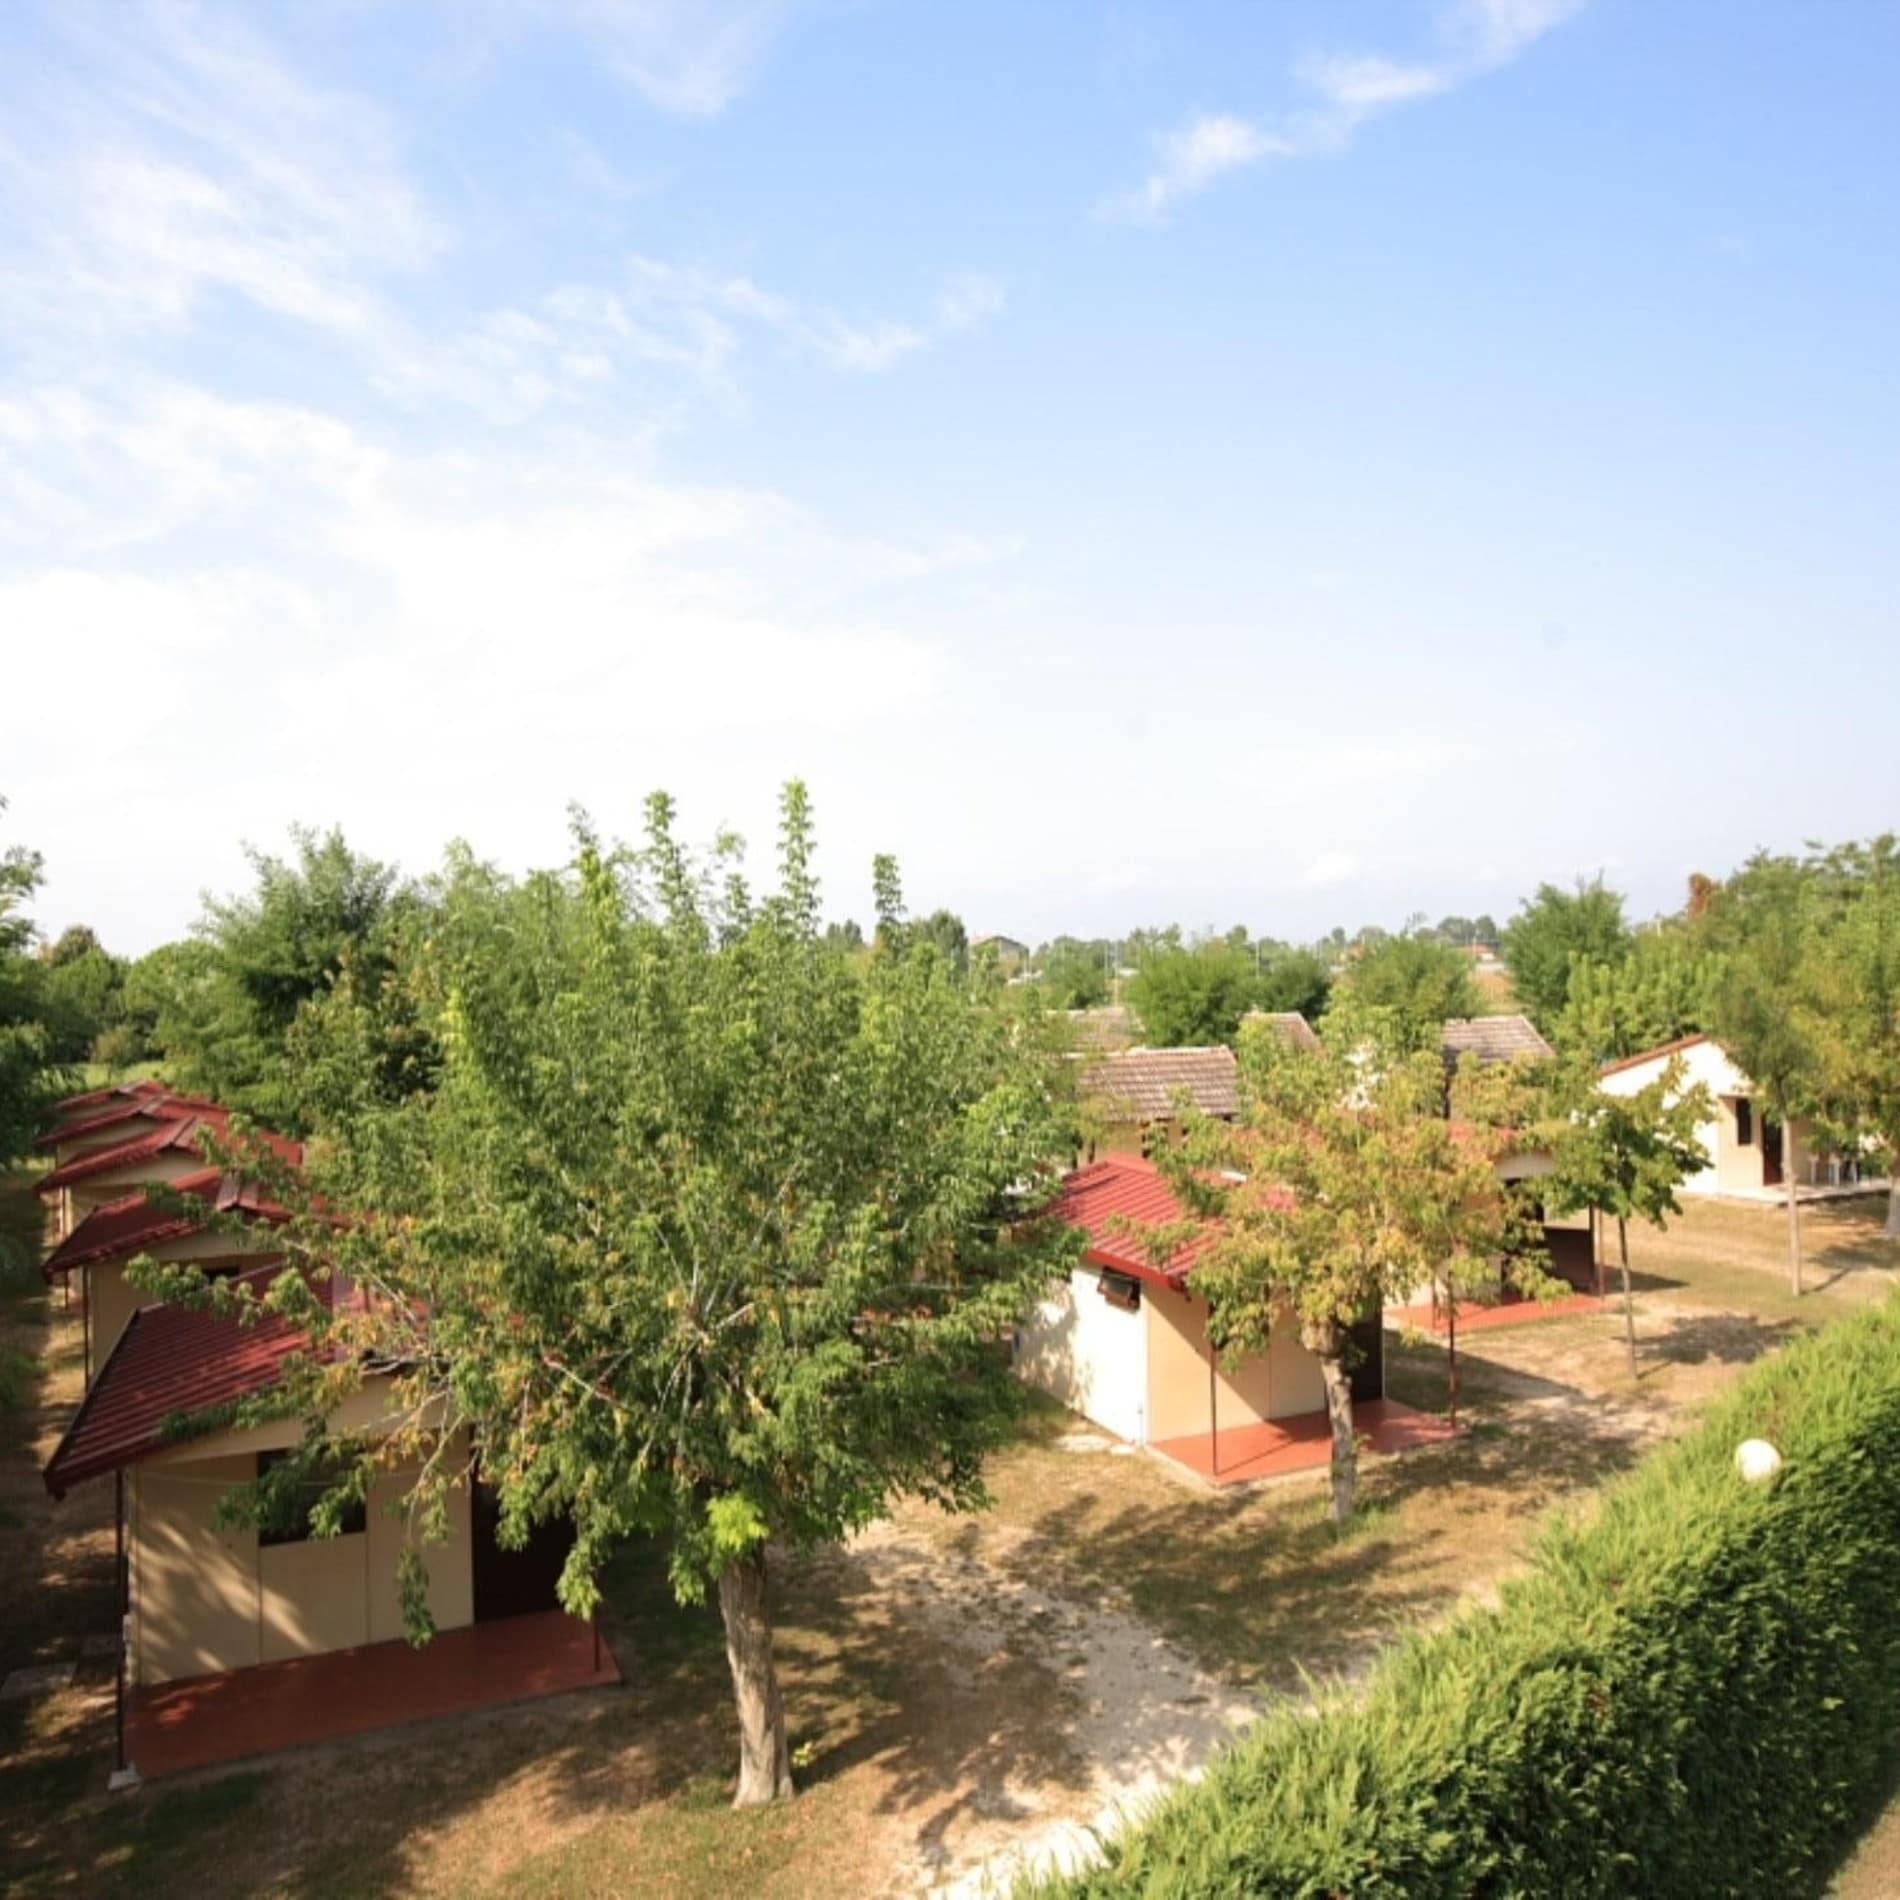 Bungalowanlage in Jesolo mit Hecke und Bäumen